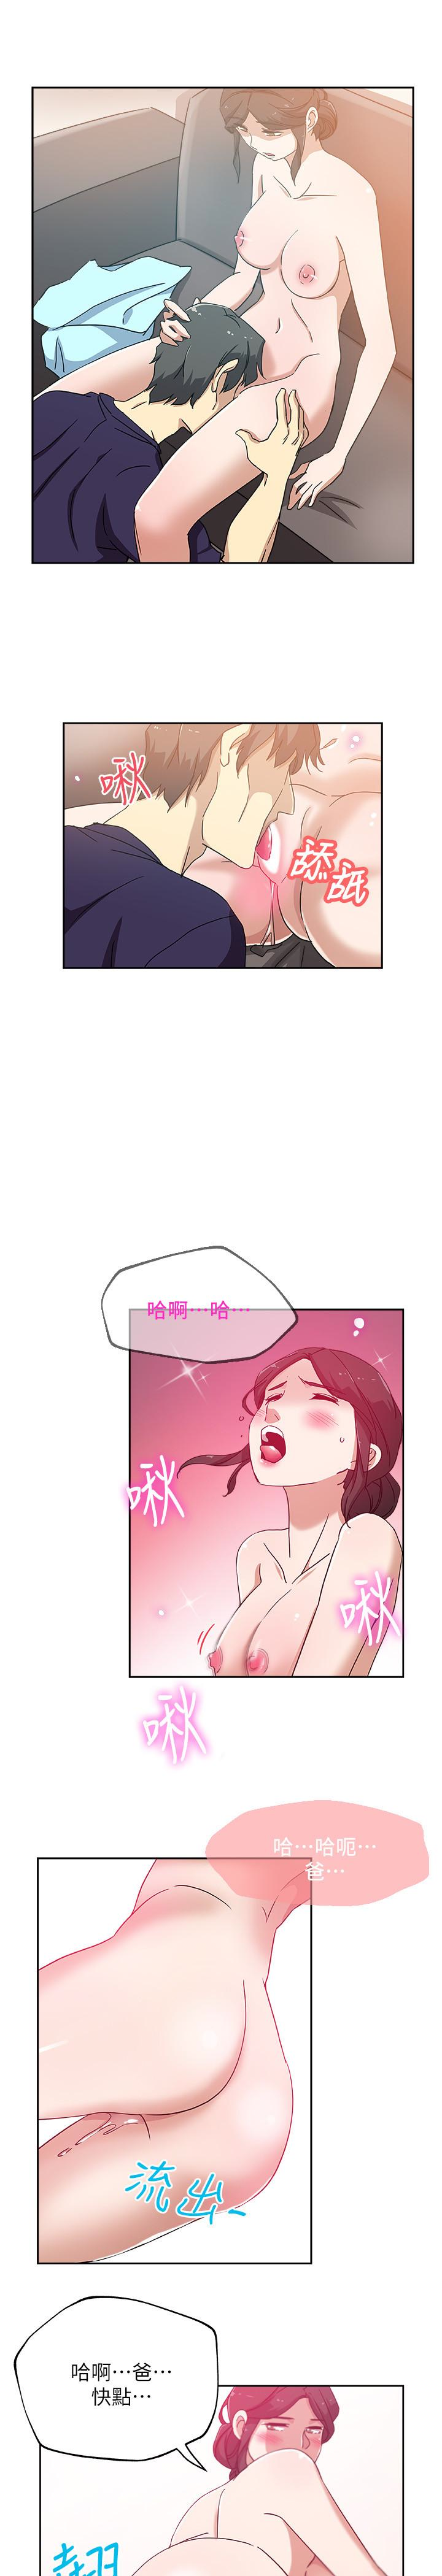 韩国污漫画 新媳婦 第17话-媳妇的甜蜜滋味 8